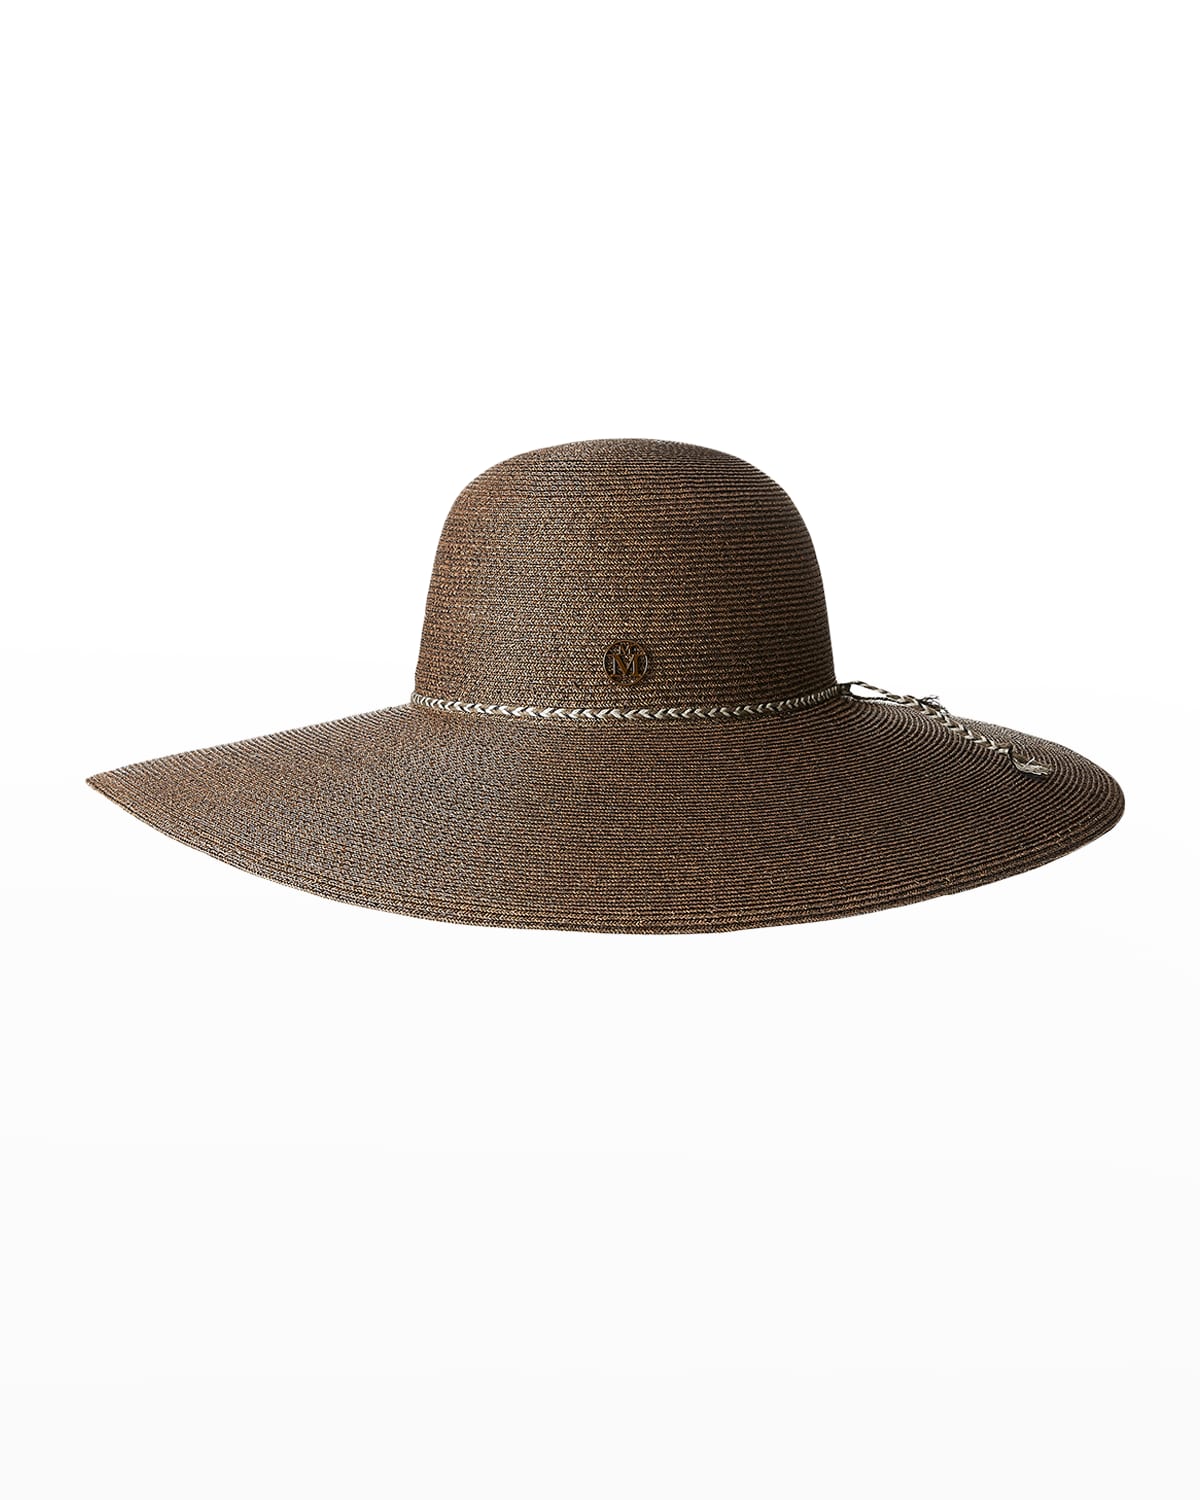 Blanche Floppy Beach Hat